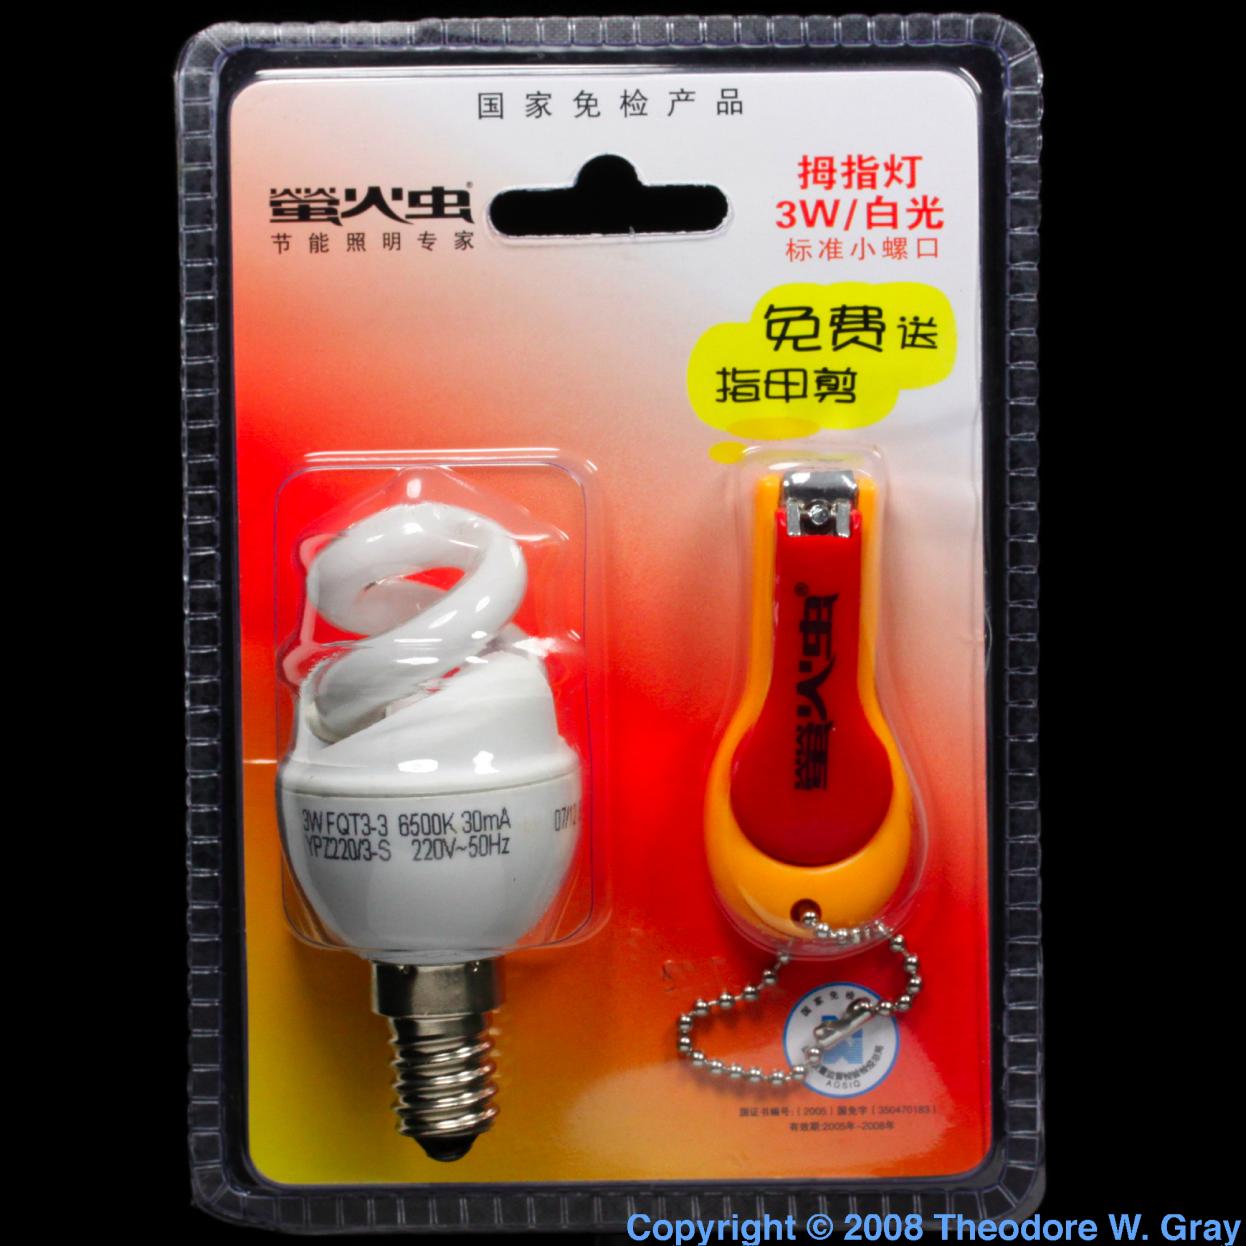 Europium 3 watt CF bulb and nail clippers